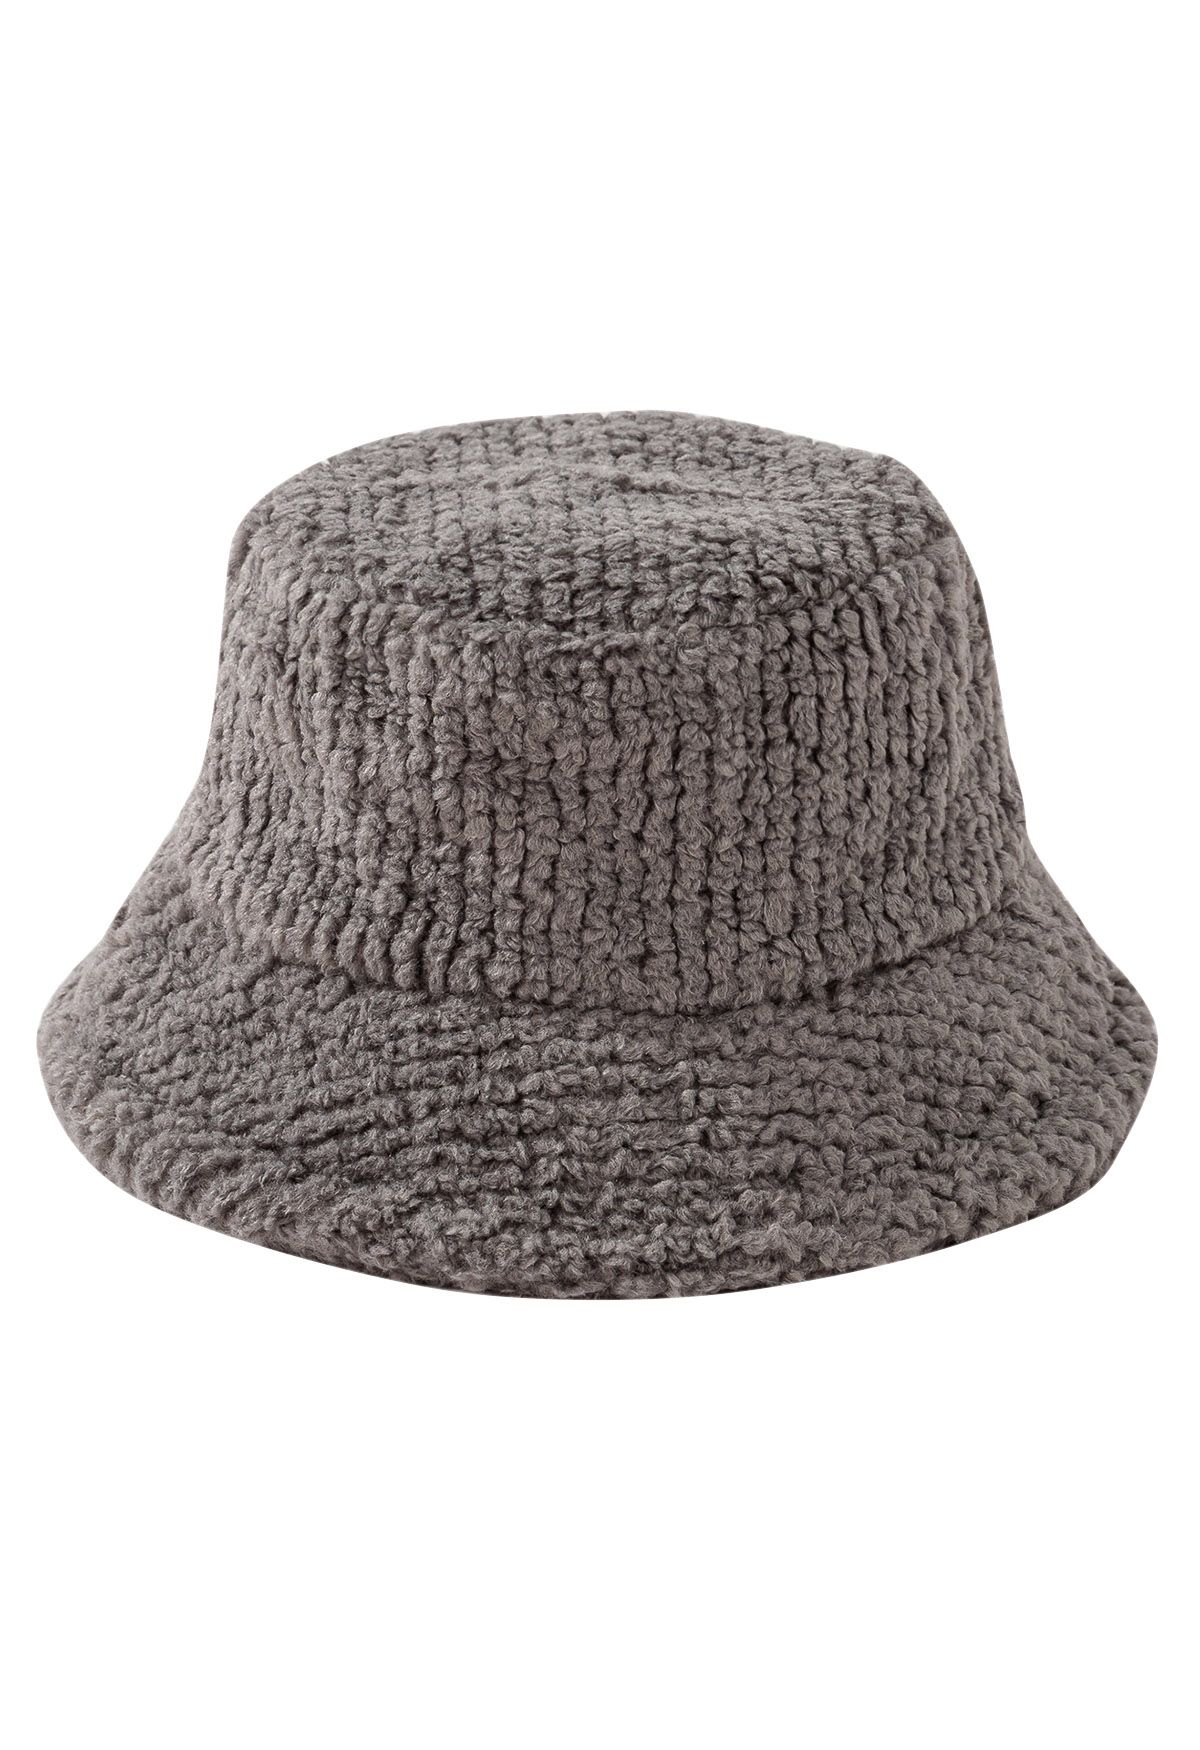 Solid Color Fuzzy Bucket Hat in Grey - Retro, Indie and Unique Fashion